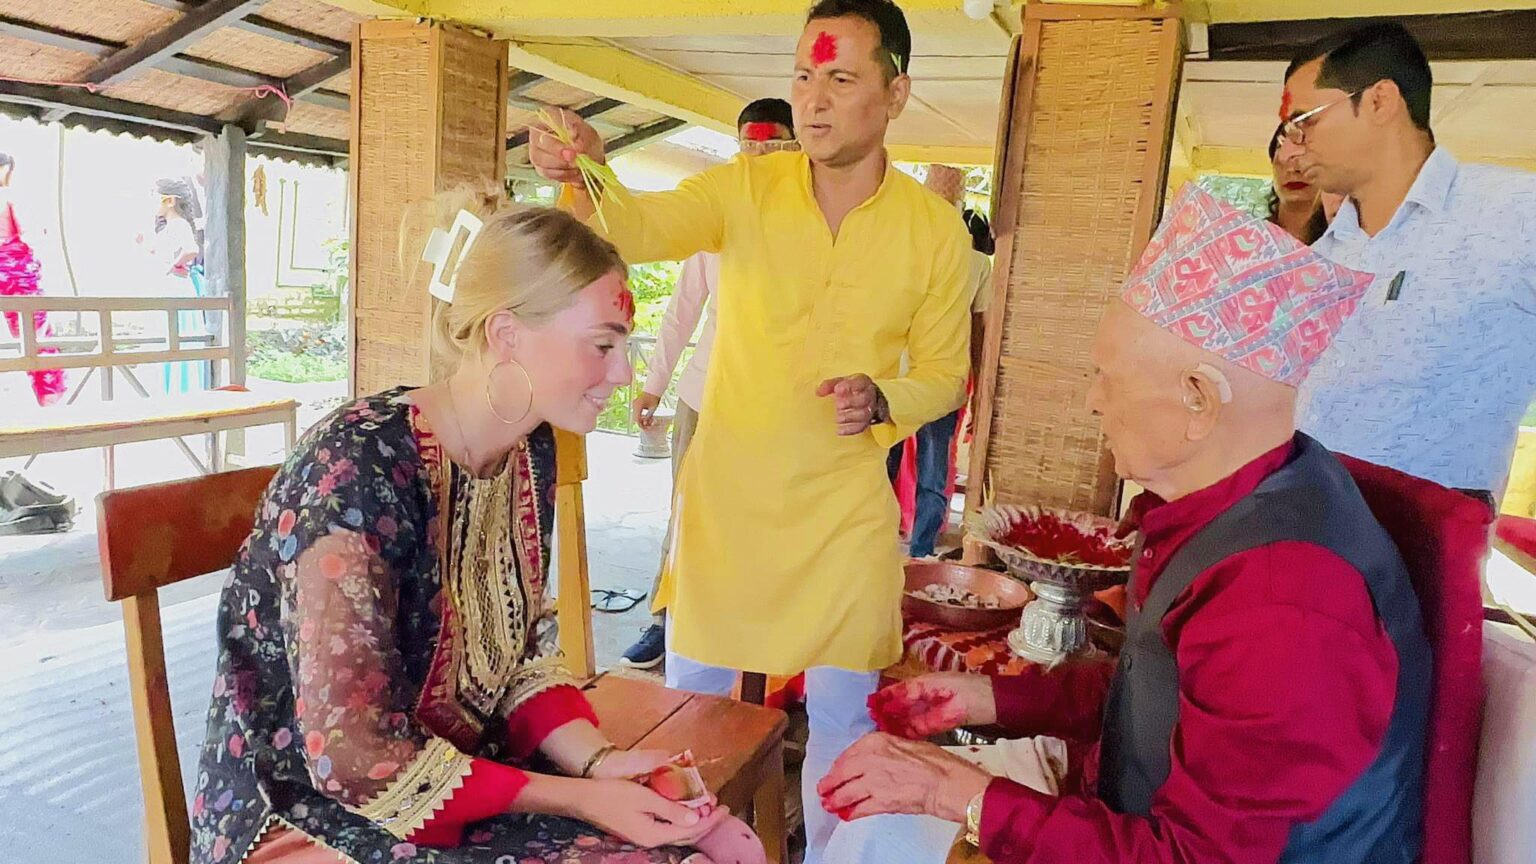 सौराहामा विदेशी पर्यटकले मनाए दसैँ, टीका र जमरा थाप्न पाउँदा दङ्ग